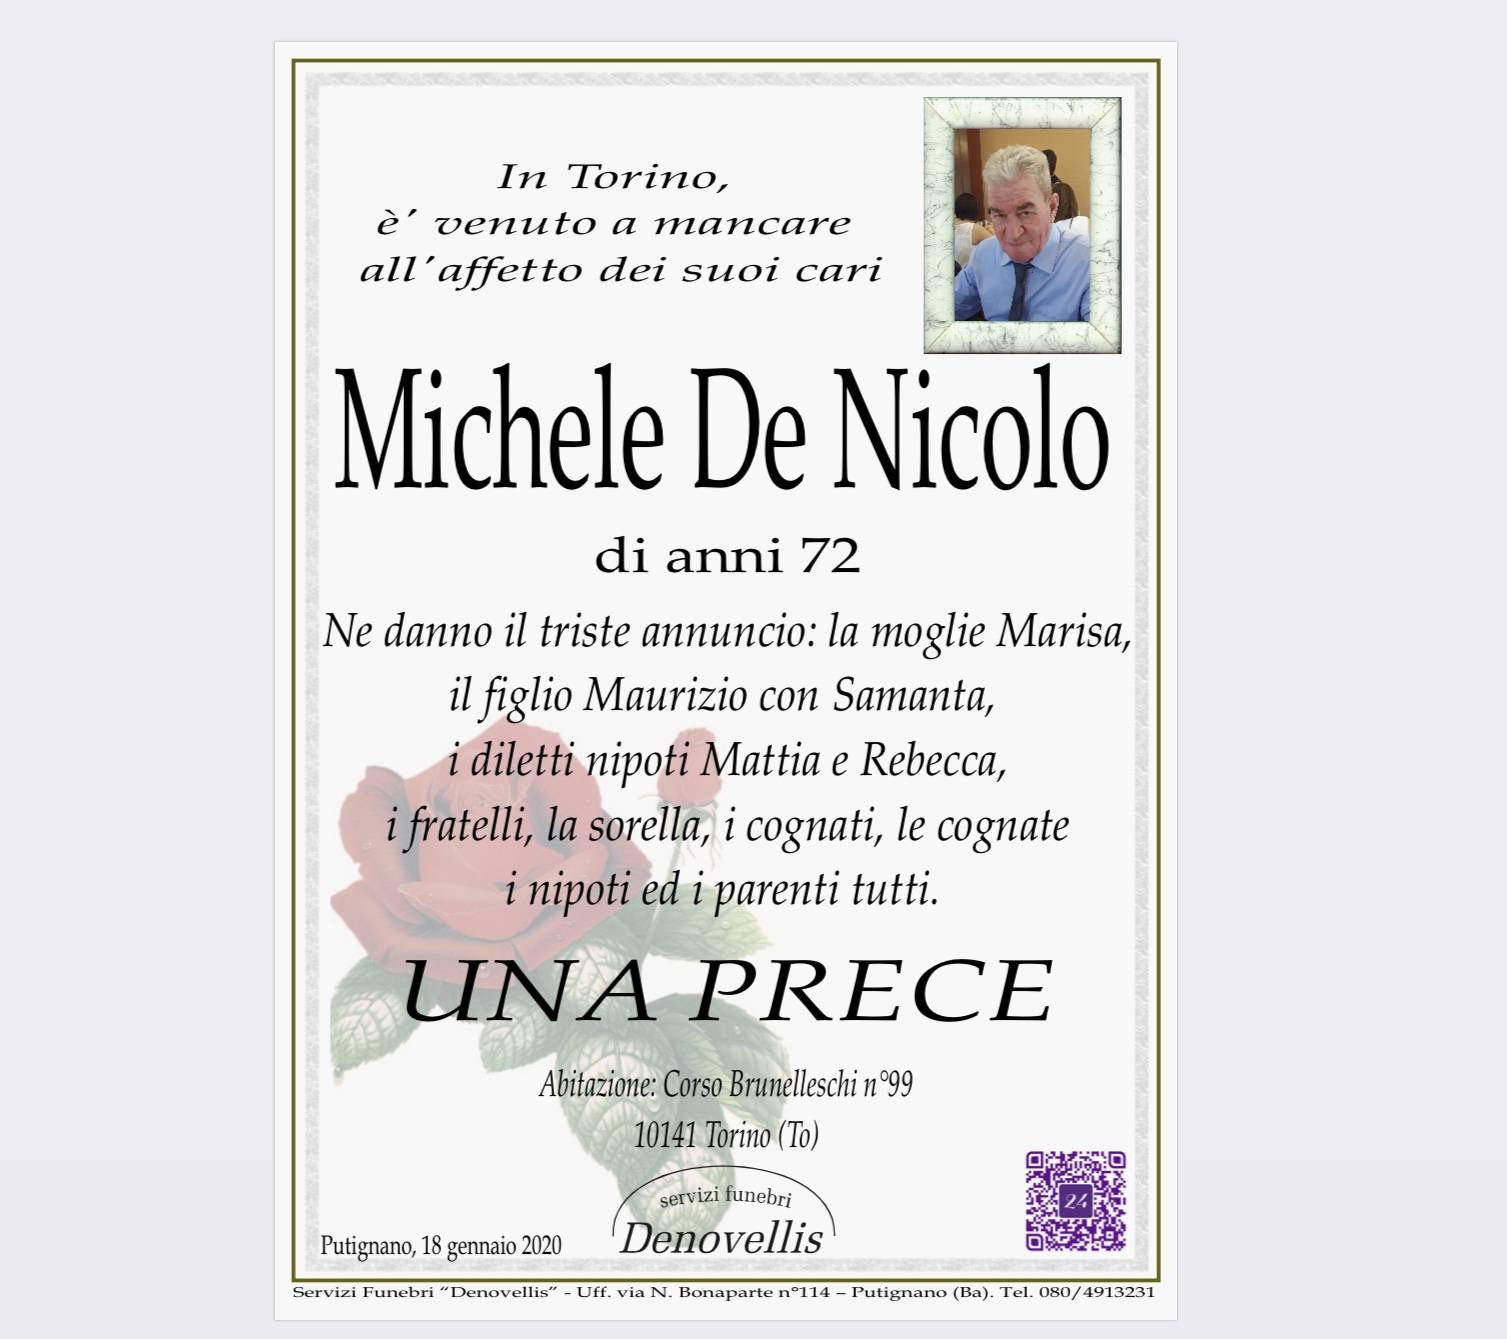 Michele De Nicolo